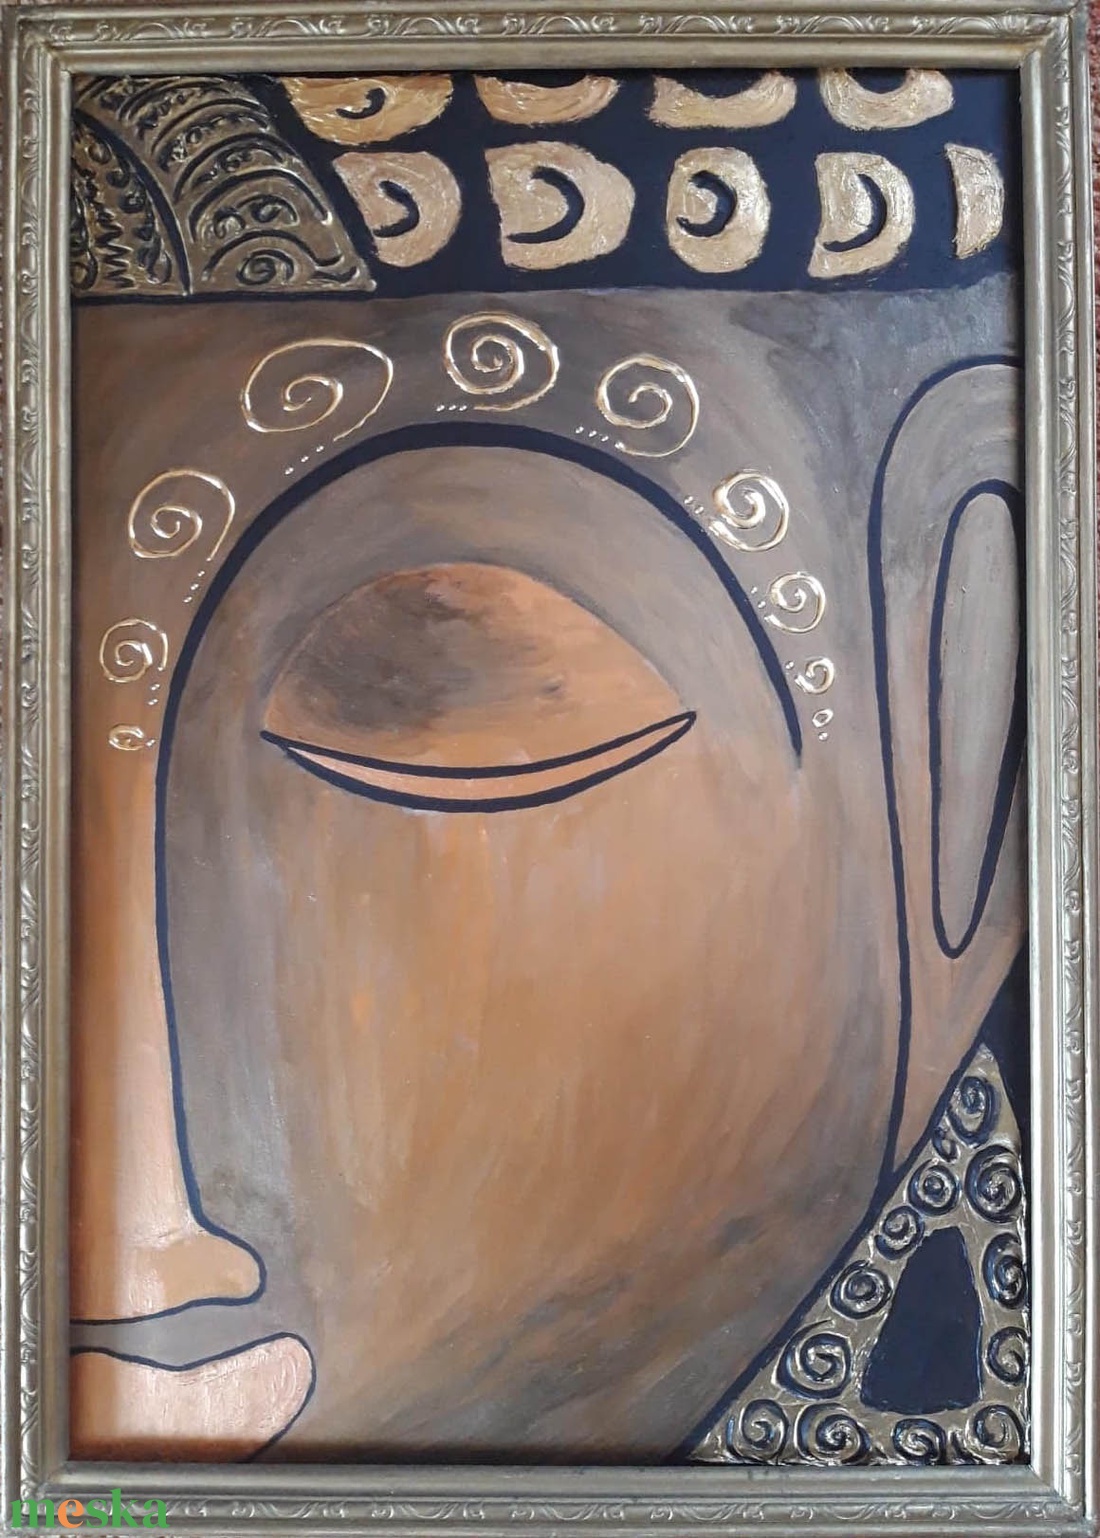 Arany Buddha festmény keretben - művészet - festmény - akril - Meska.hu